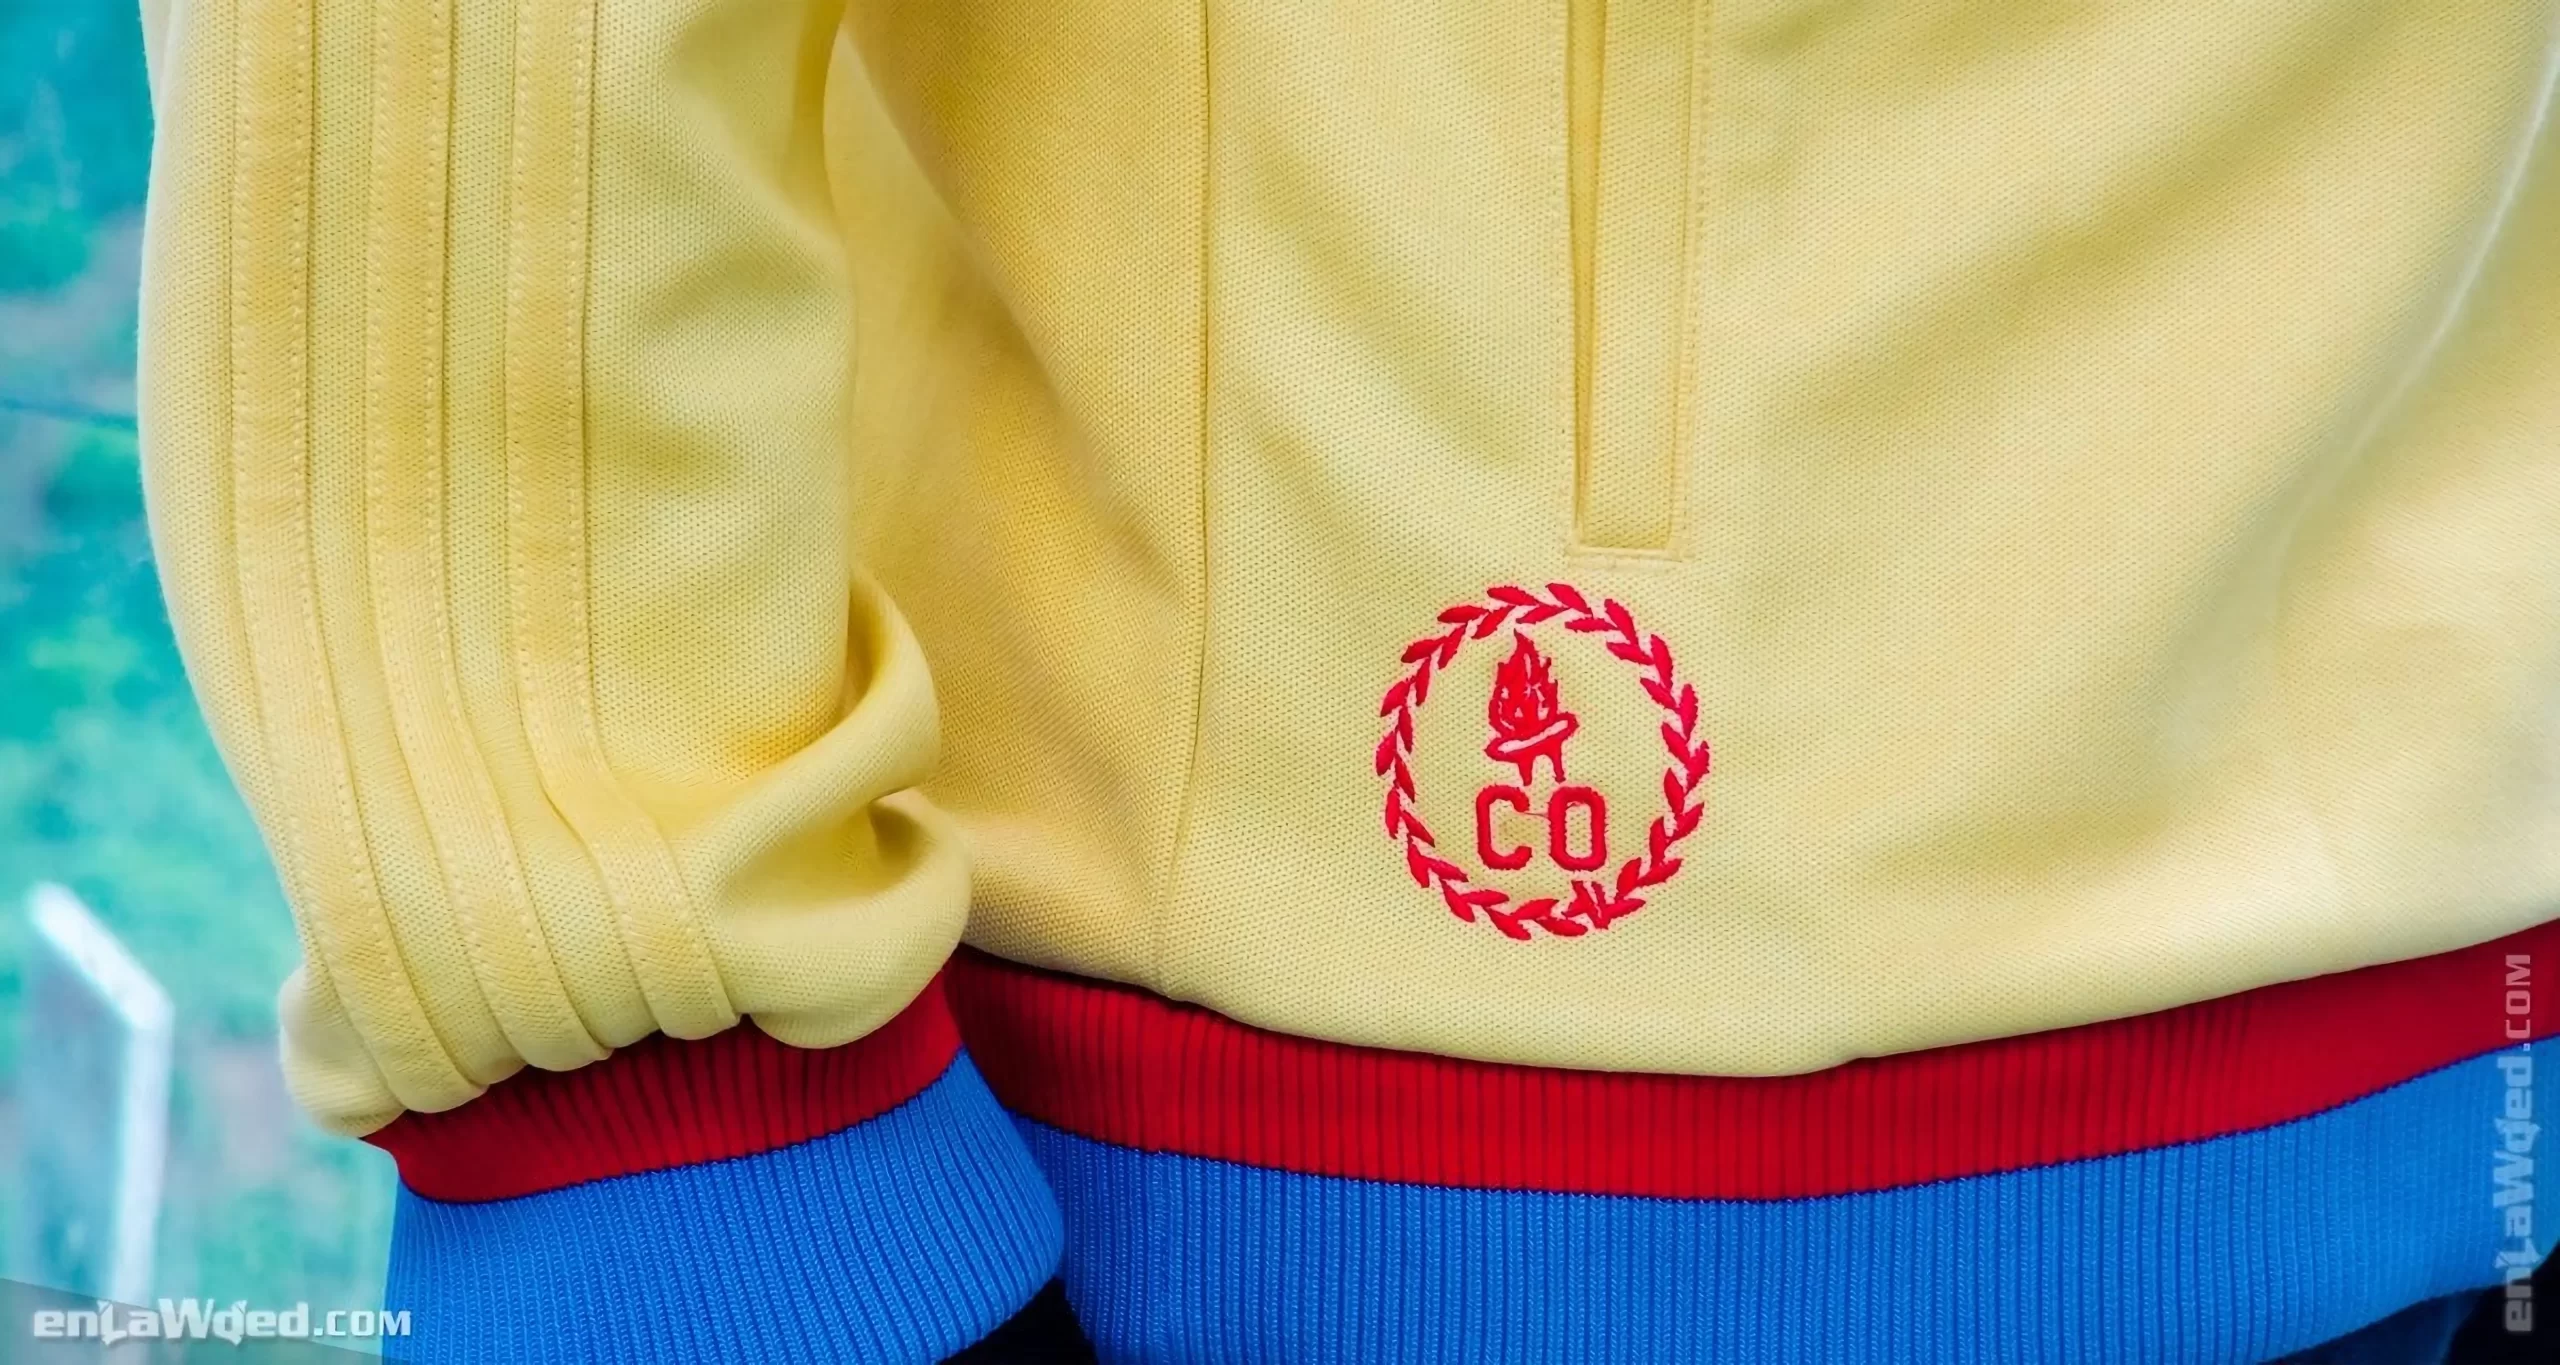 Men’s 2006 Colombia TT by Adidas Originals: Legitimate (EnLawded.com file #lmcf0ymp9trf0fdcwfr)